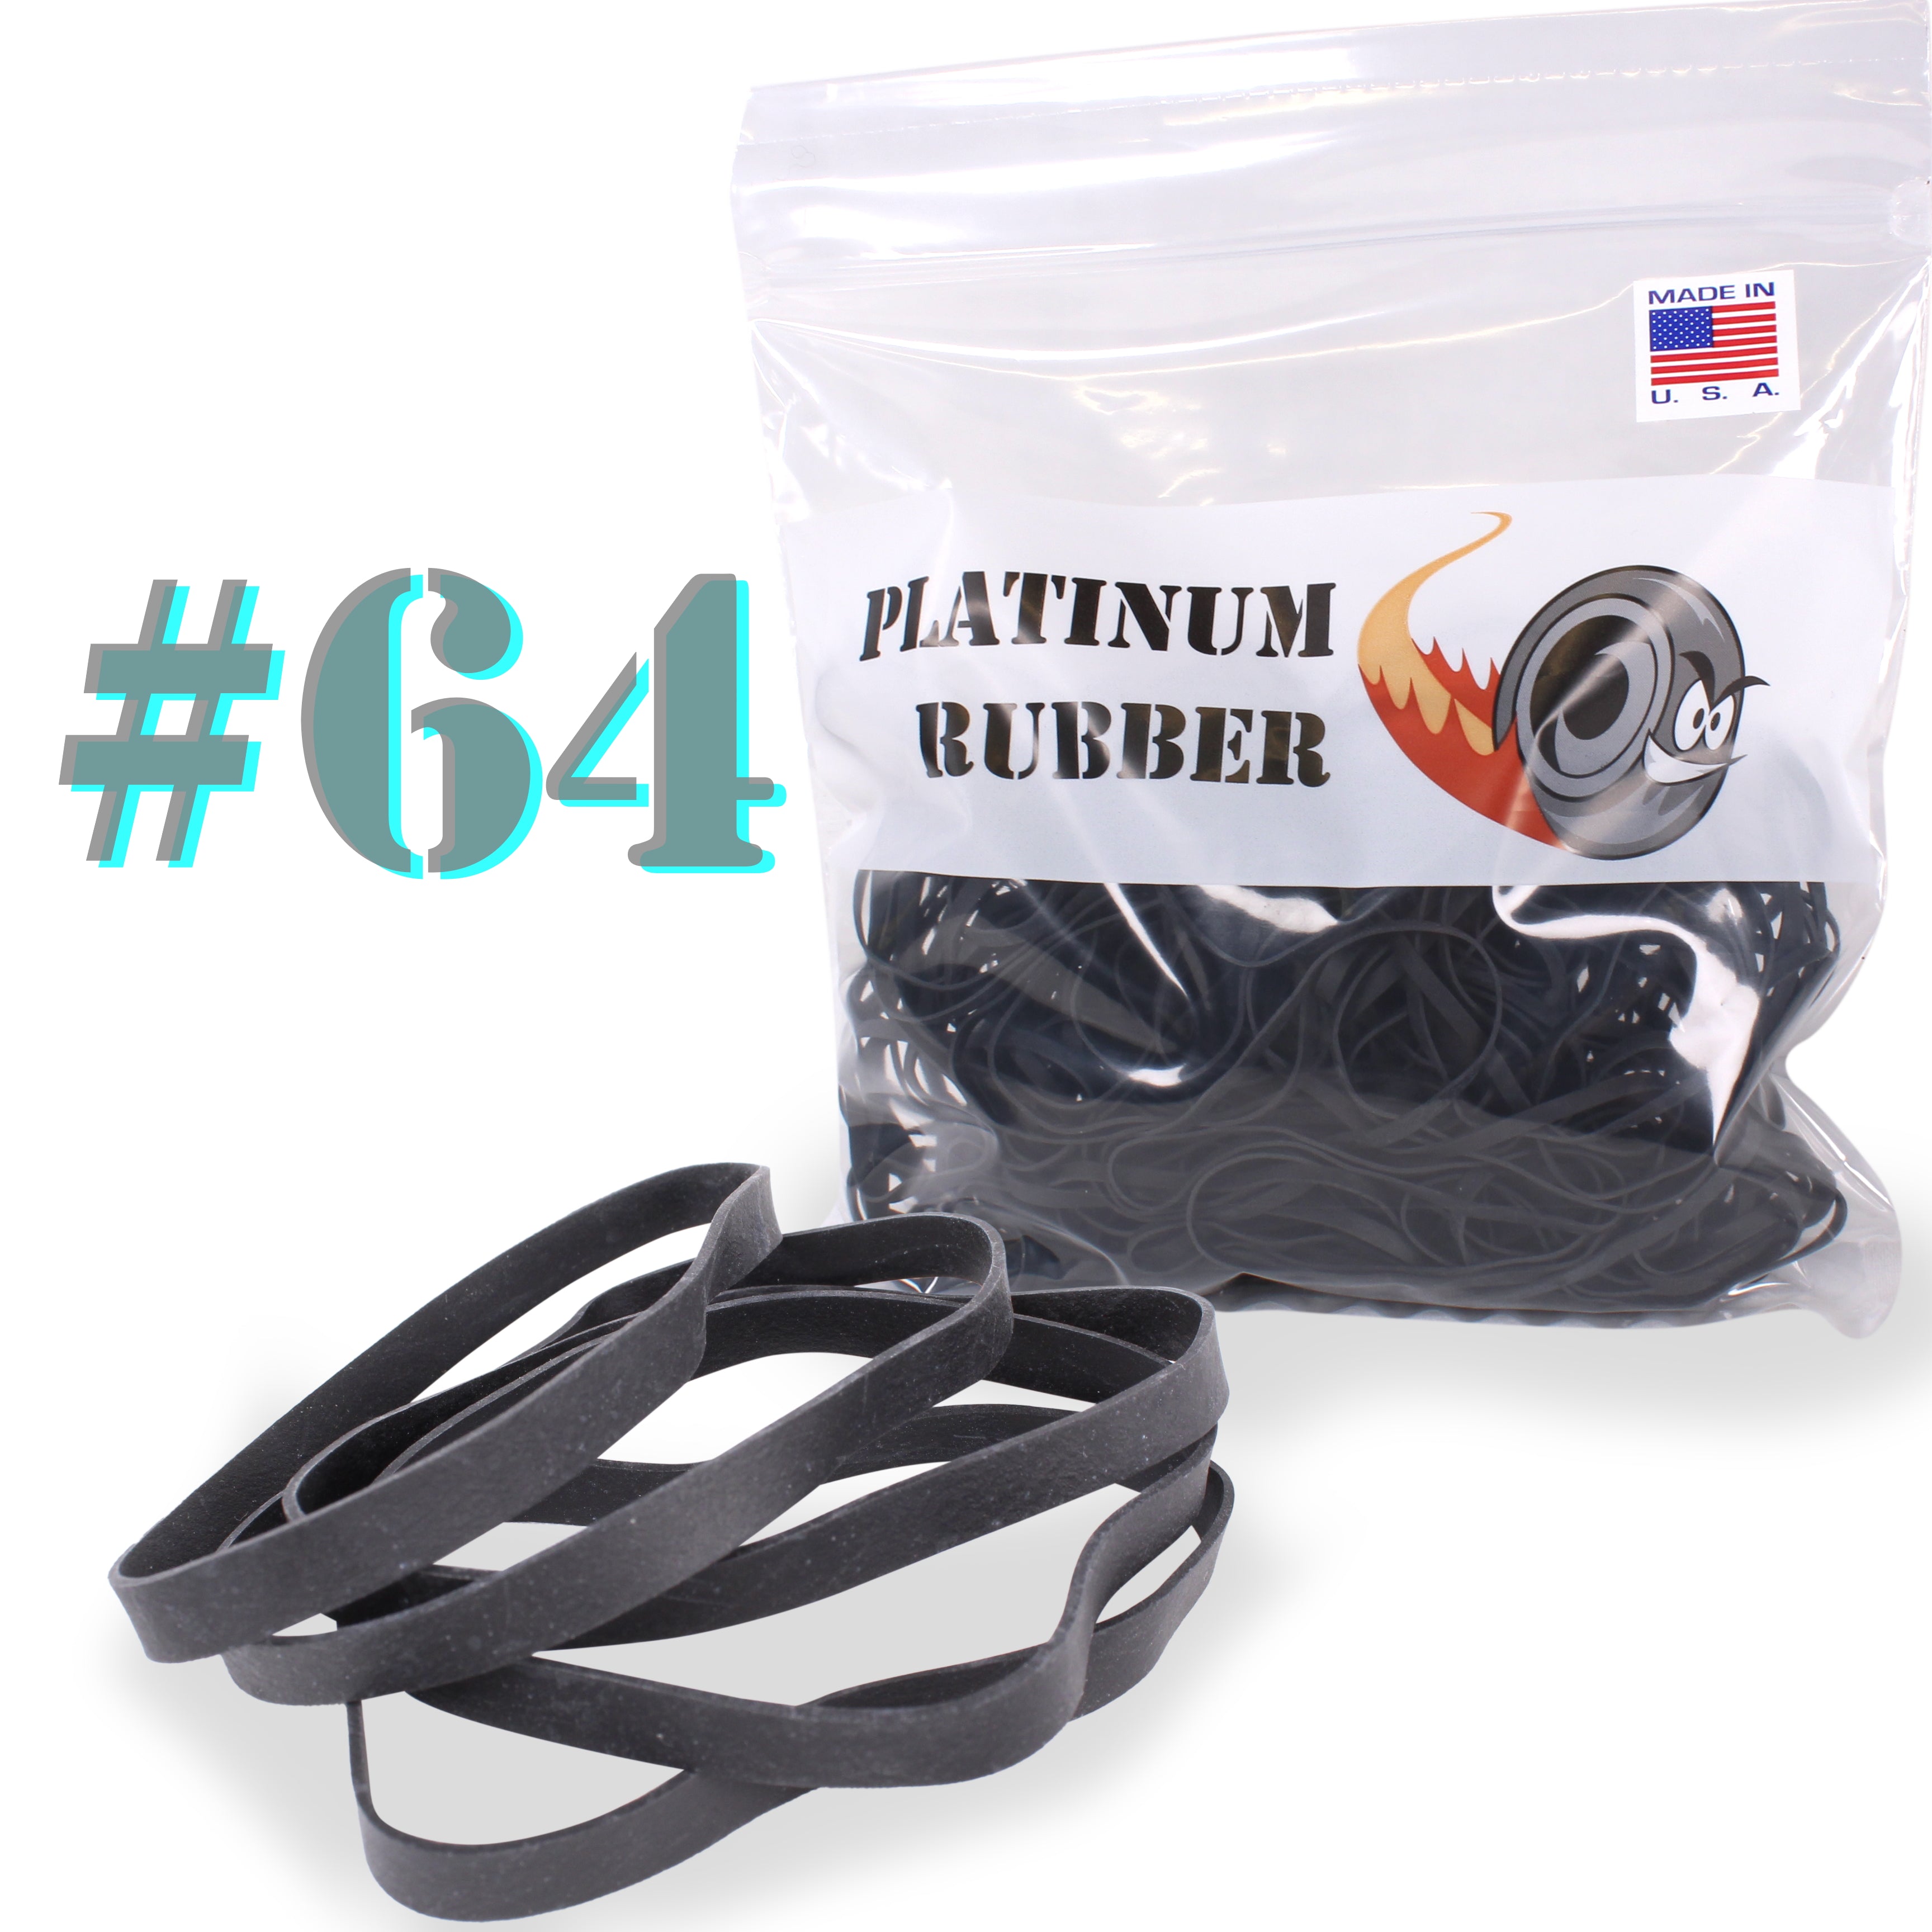 33 Black Rubber Bands (3.5 x 1/8) – Platinum Rubber